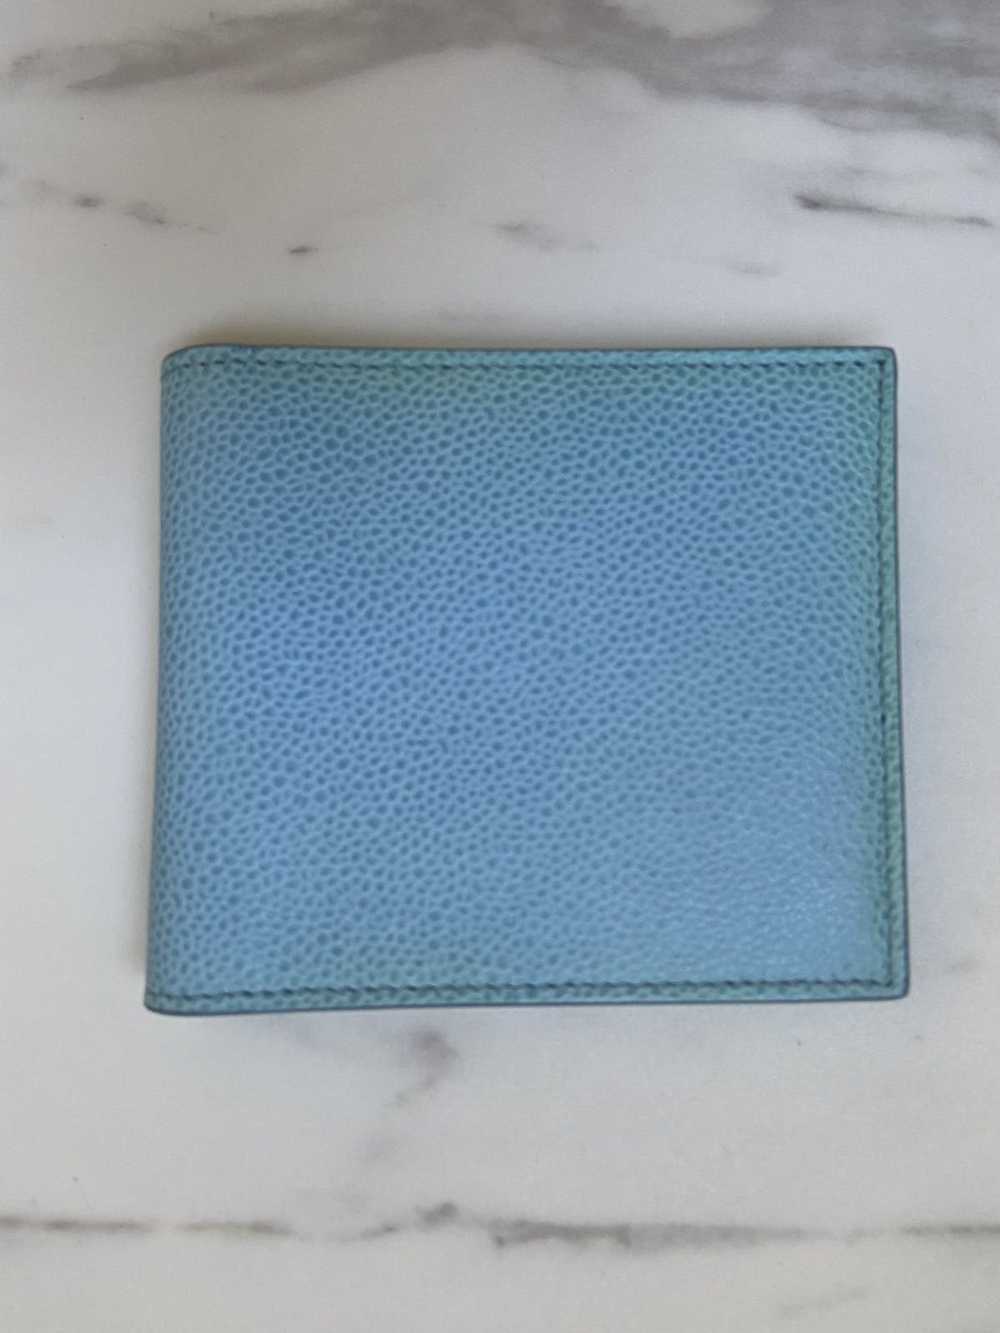 Thom Browne Thom Browne billfold wallet blue - image 2